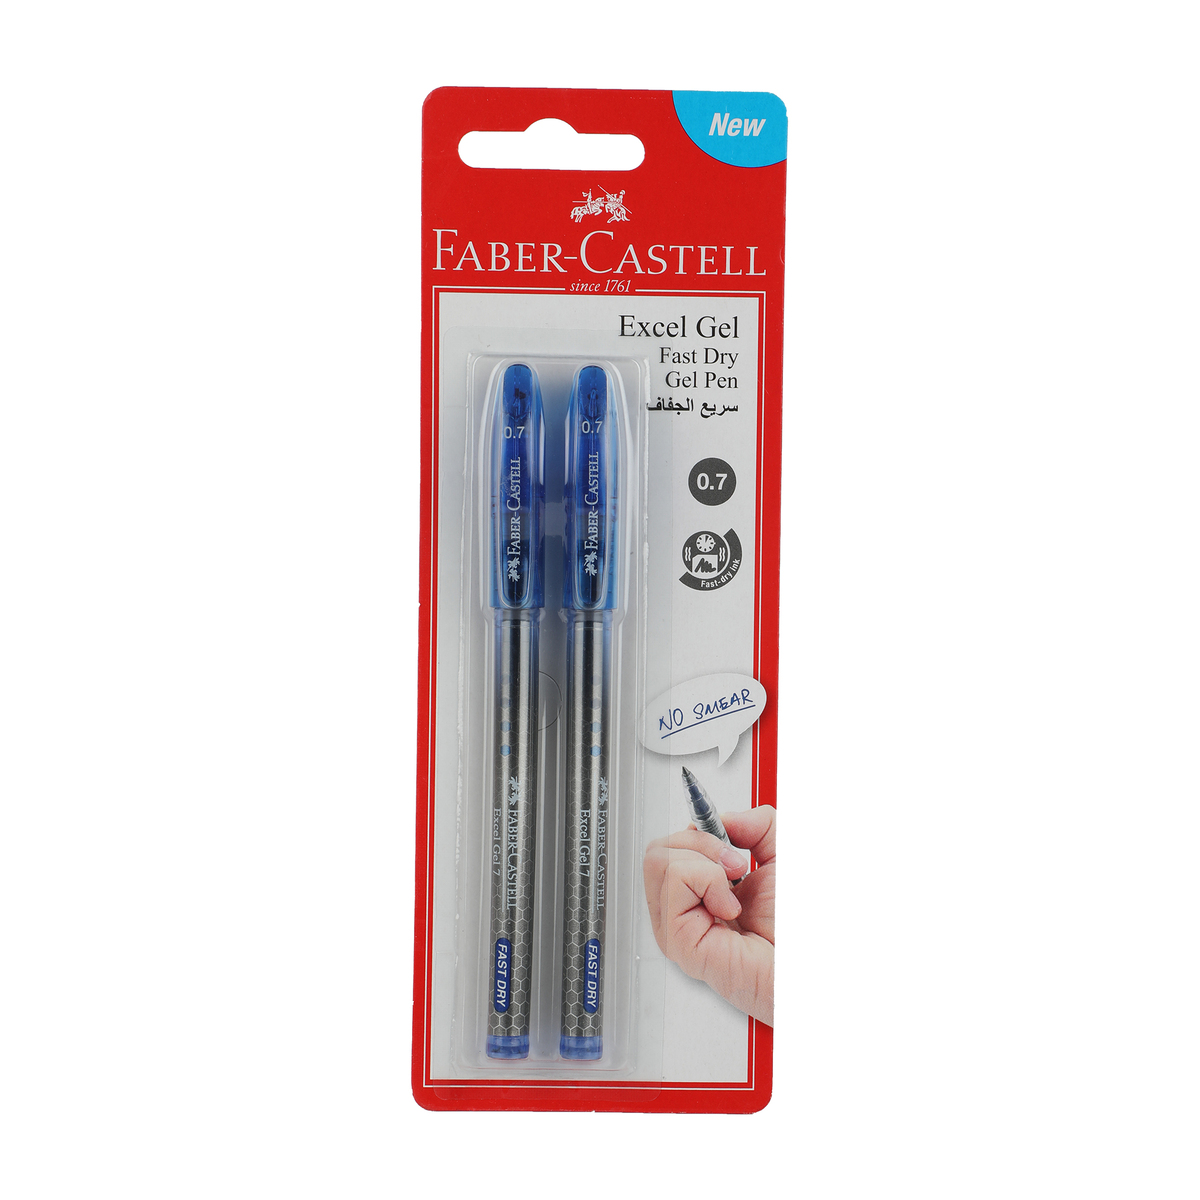 Faber-Castell Excel Gel Pen 2pcs FCM641508